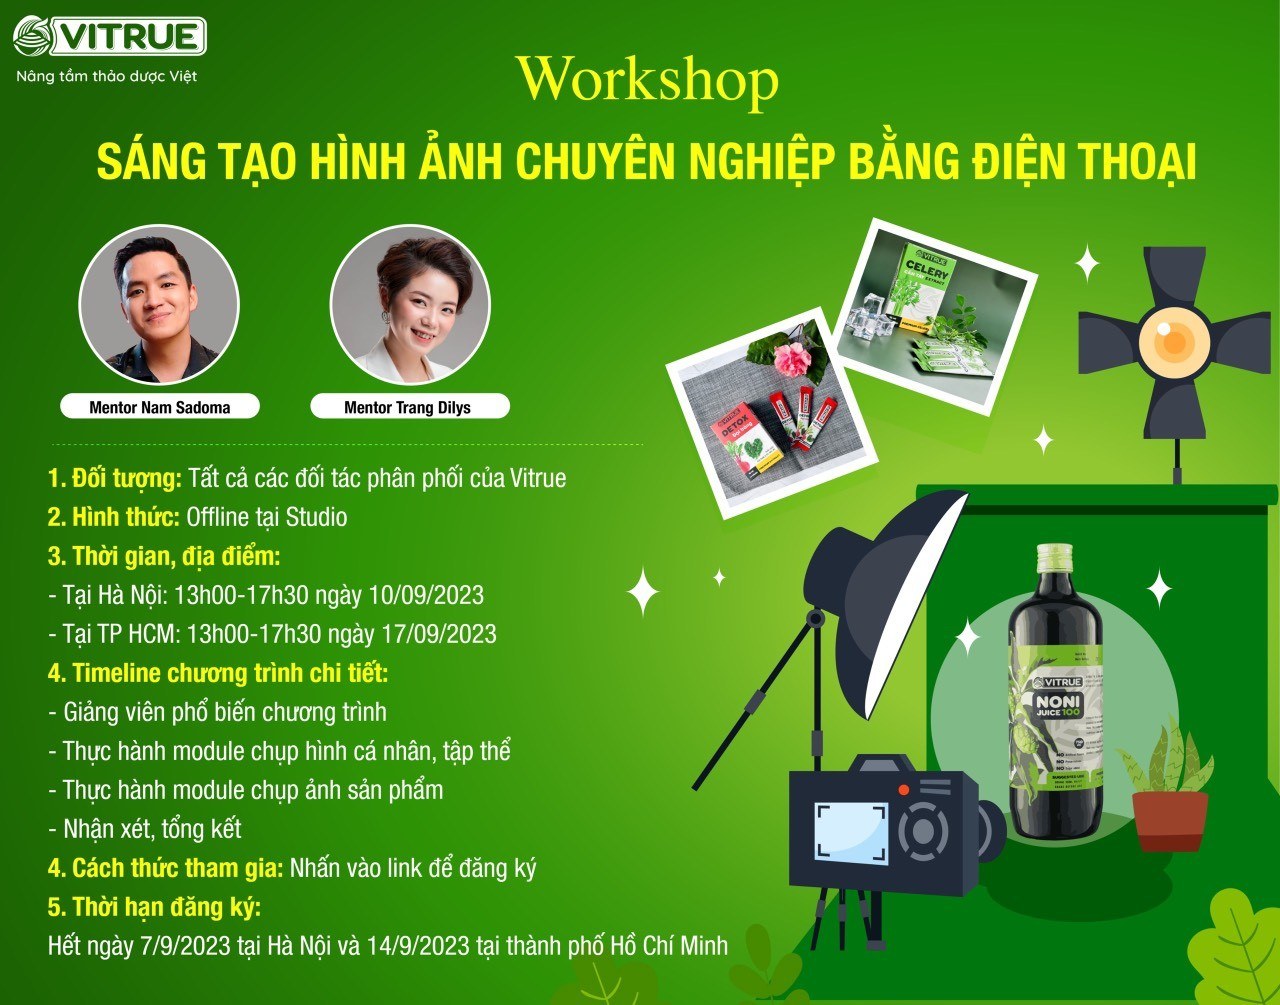 Vitrue tổ chức workshop: Sáng tạo hình ảnh chuyên nghiệp bằng điện thoại